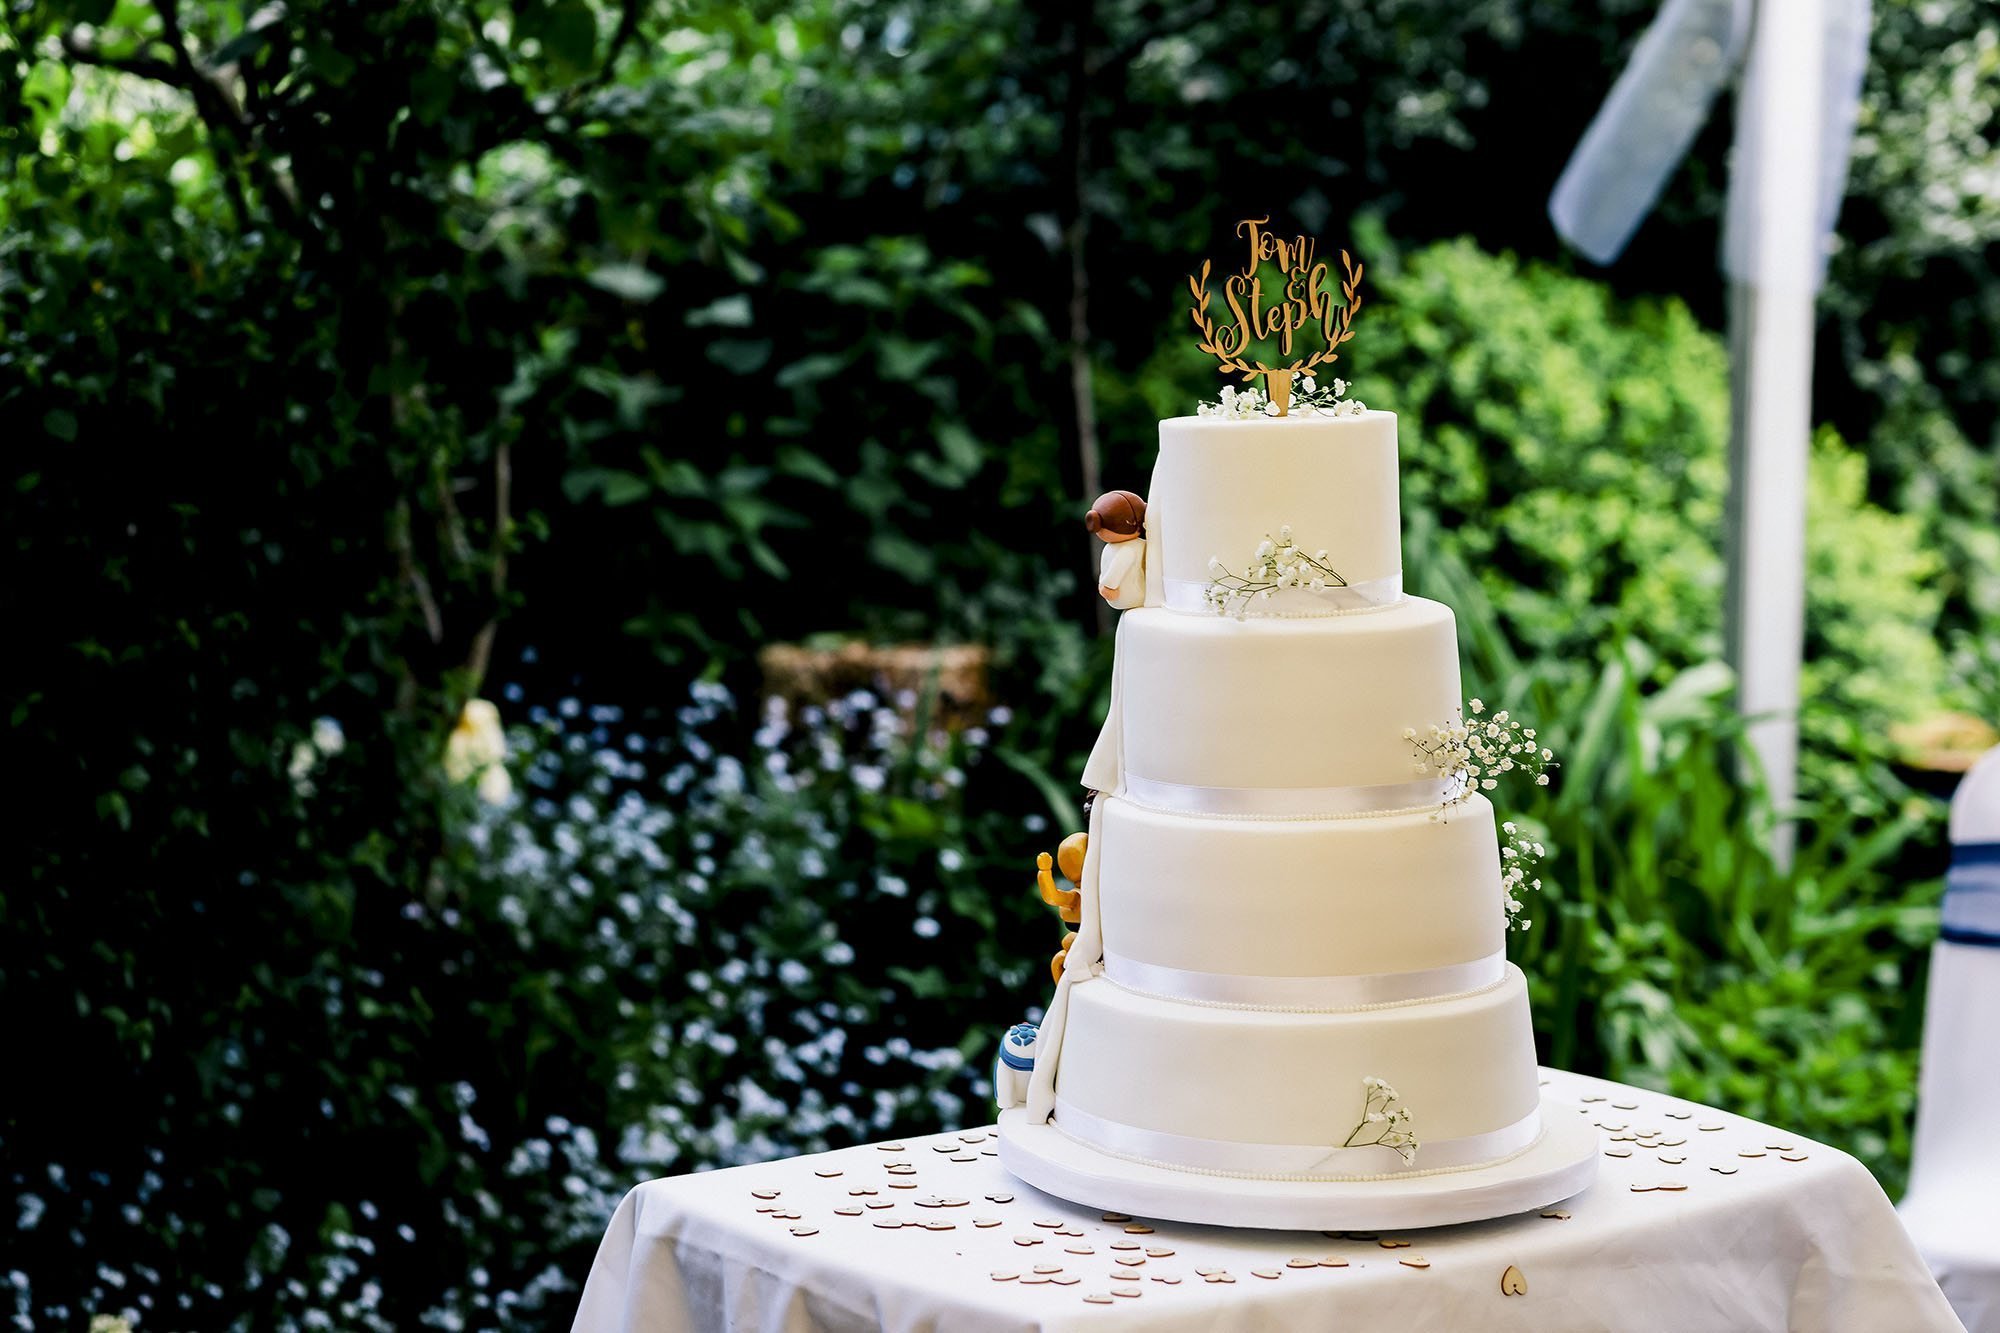 Wedding in garden at Home in Preston - Preston Wedding Photographer